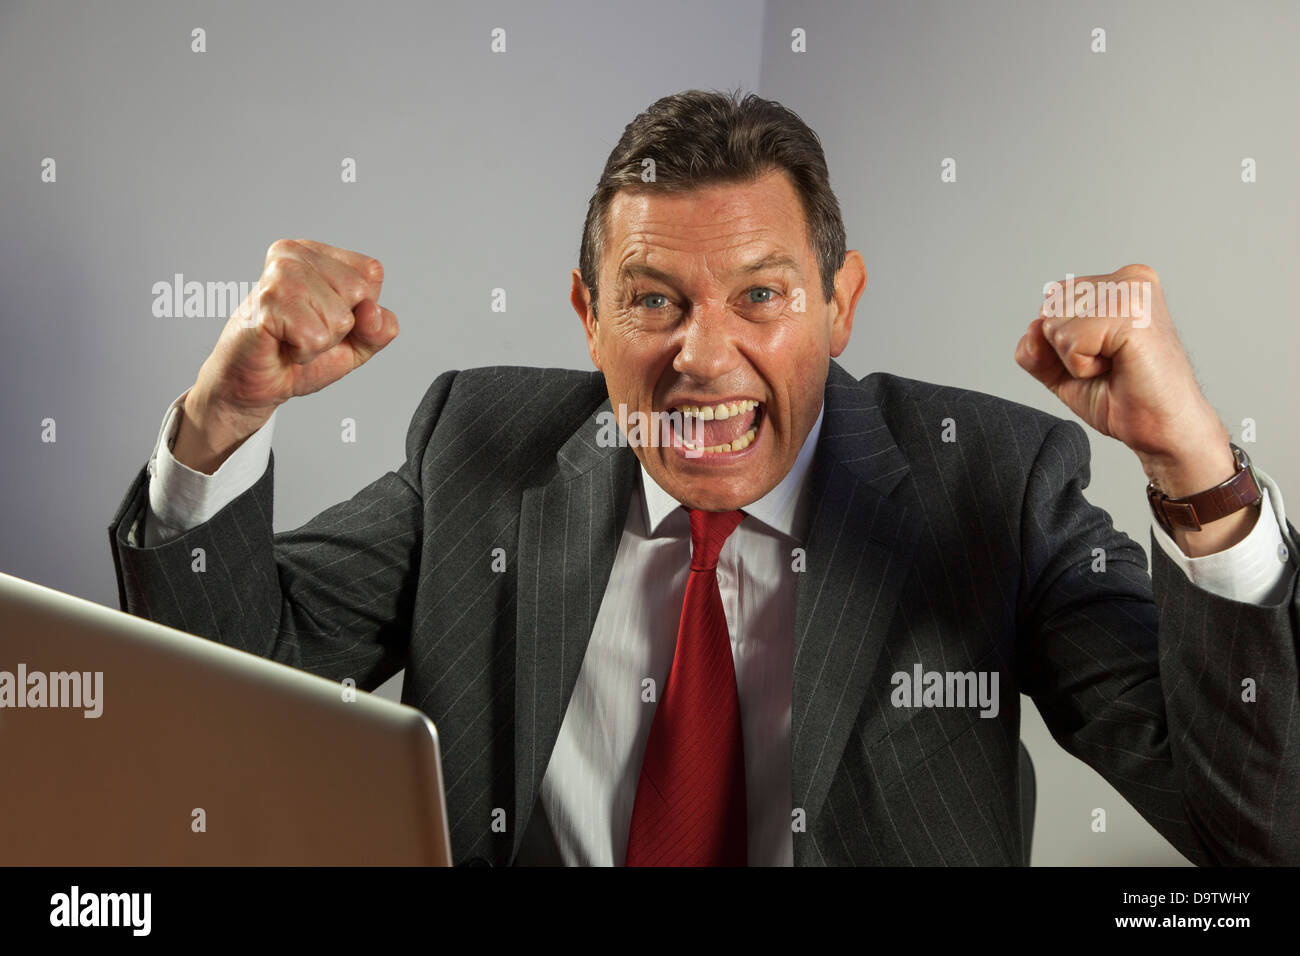 Portrait business man à un bureau à la recherche d'appareil photo, encourager avec les poings serrés, assis devant un ordinateur portable. Banque D'Images